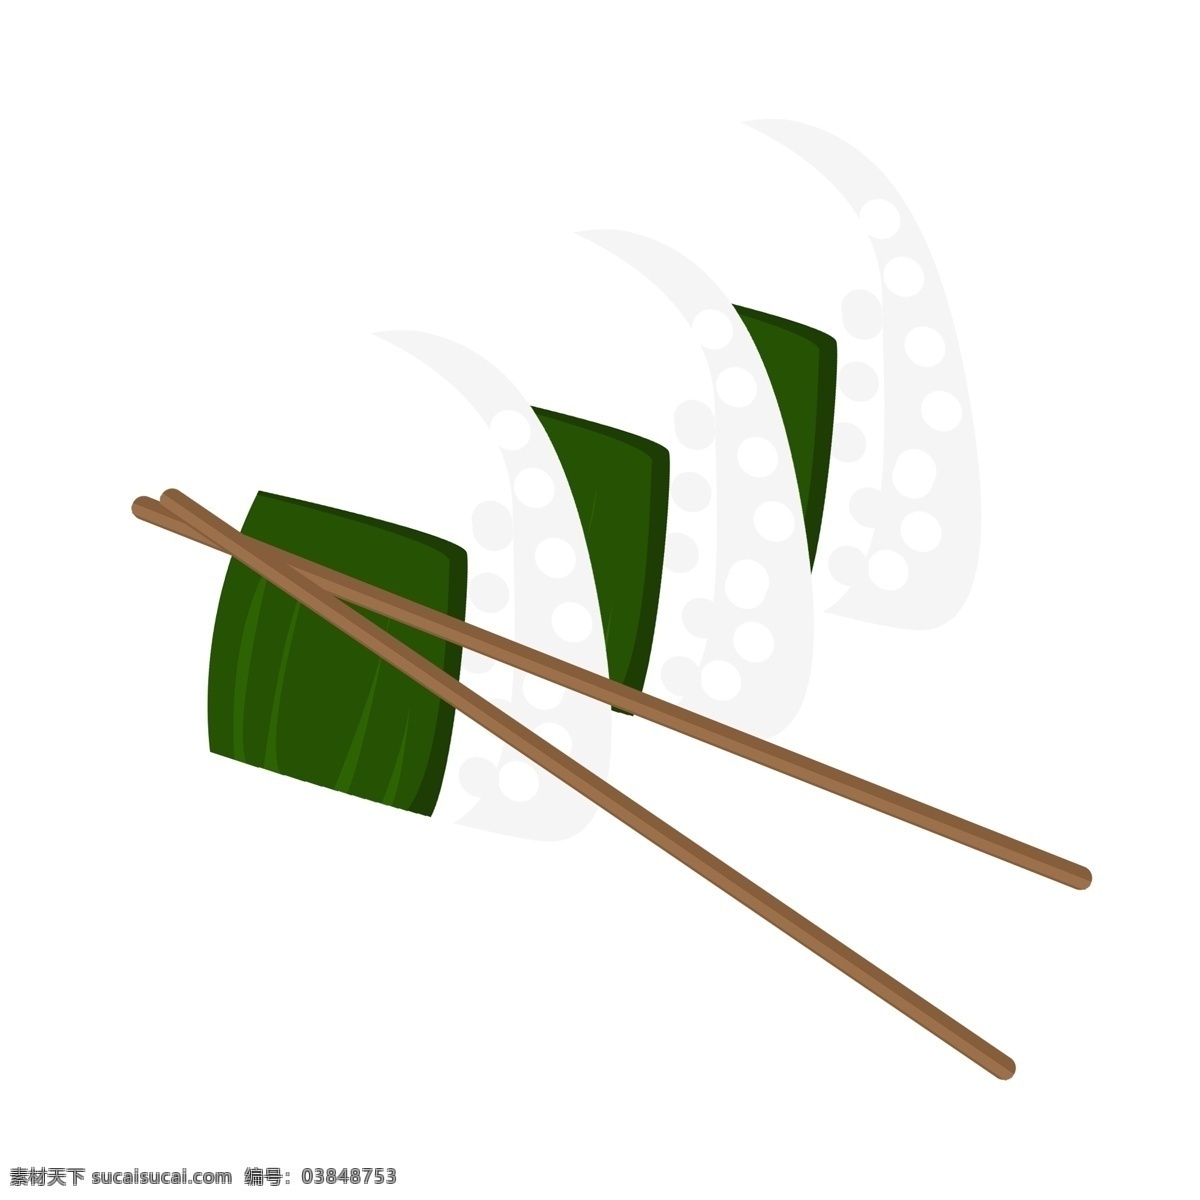 日本 特色 美食 插画 寿司 日本食物 特色美食 筷子 食物插图 日本寿司 日本小吃 日式美食